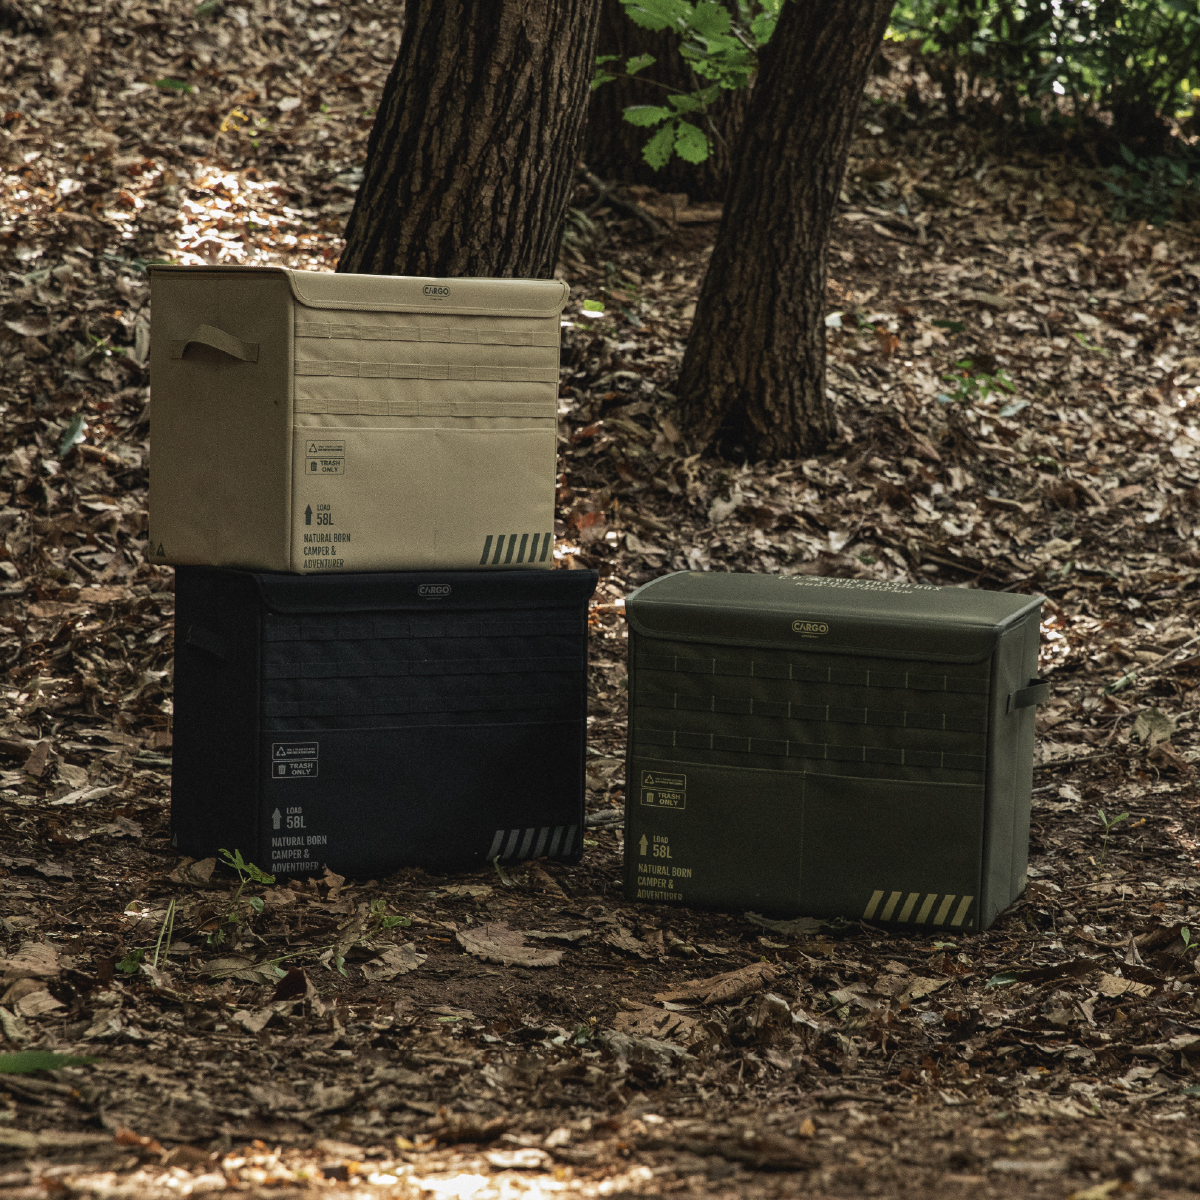 CARGO CONTAINER TWIN TRASH BOX ツイントラッシュボックス 折りたたみ ゴミ箱 収納ボックス キャンプ アウトドア